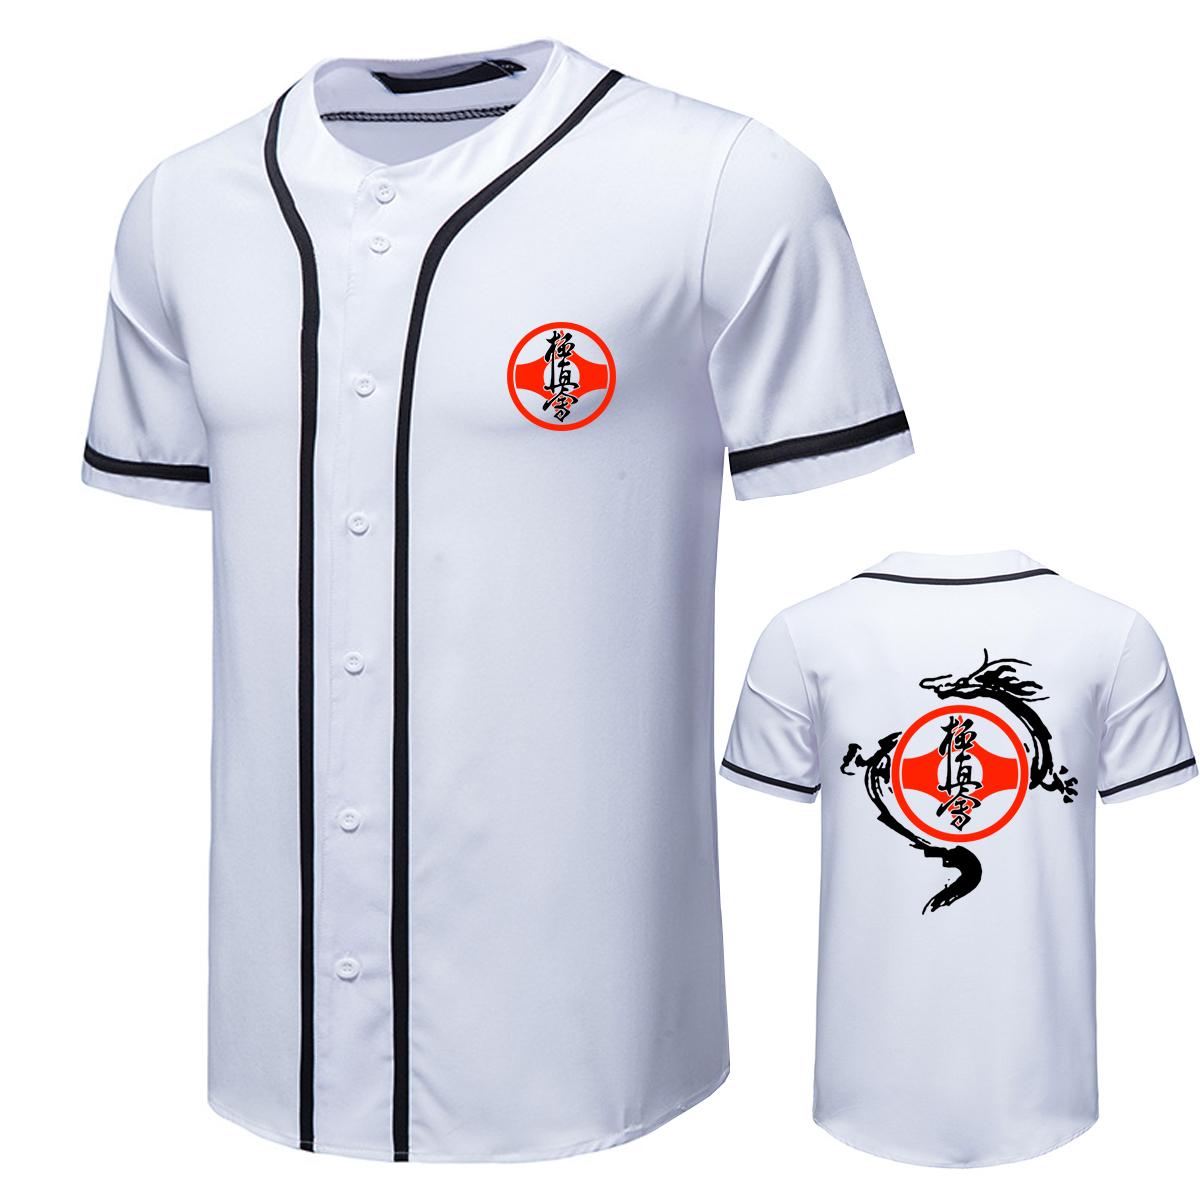 Bababuy club Men's Casual Short Sleeve Shirts Baseball Shirts US Size Loose Shirts Casual Shirt